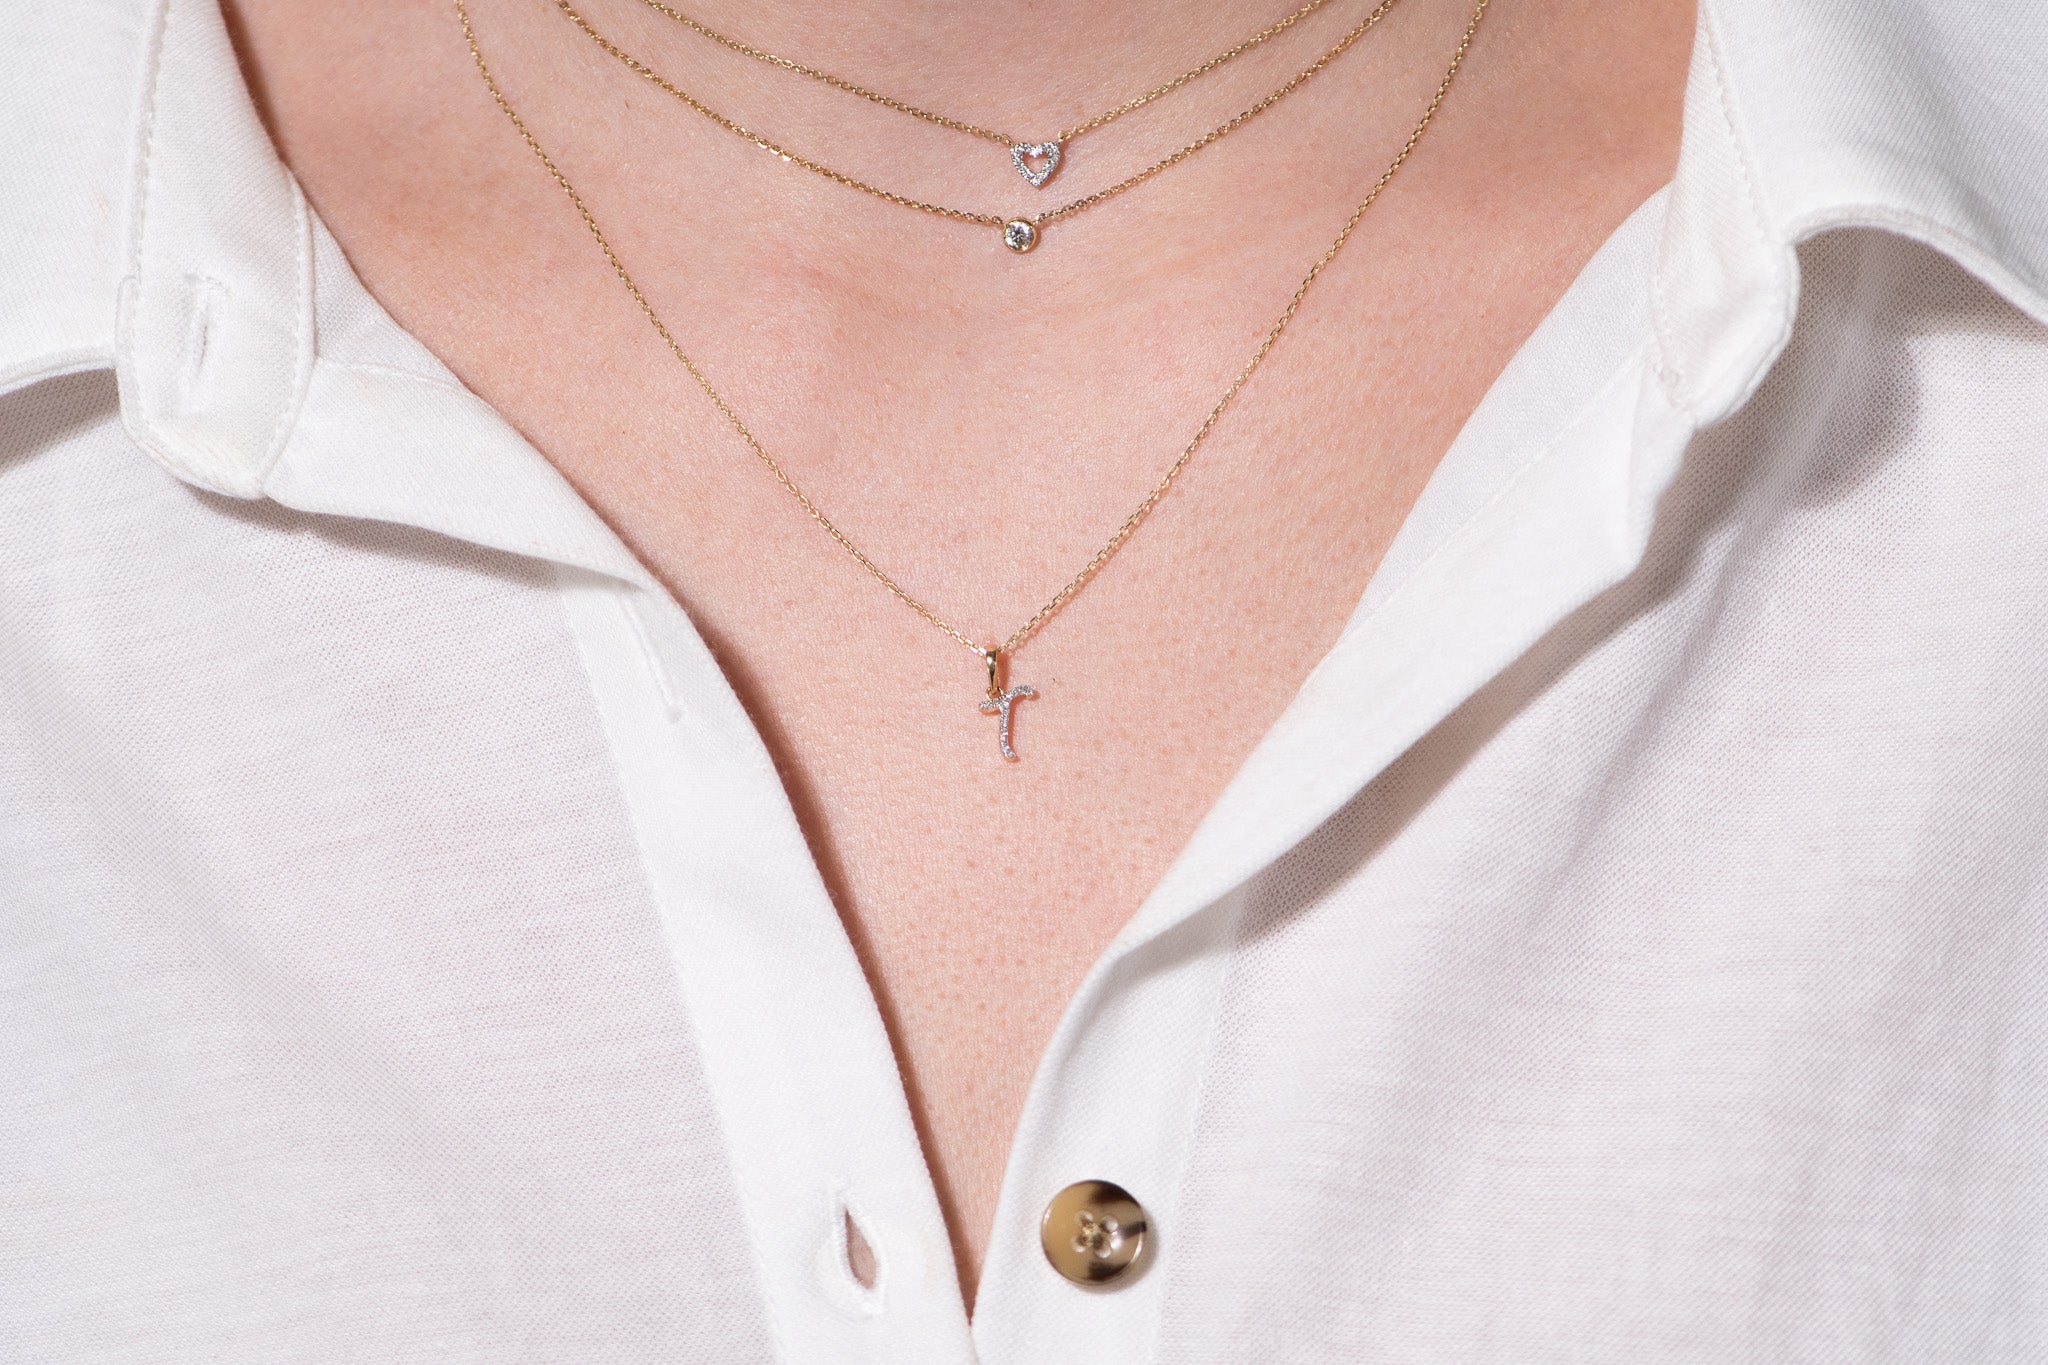 Cursive Diamond Initial Necklace - T Necklaces Estella Collection #product_description# 18557 14k Diamond Gemstone #tag4# #tag5# #tag6# #tag7# #tag8# #tag9# #tag10# 14k Yellow Gold